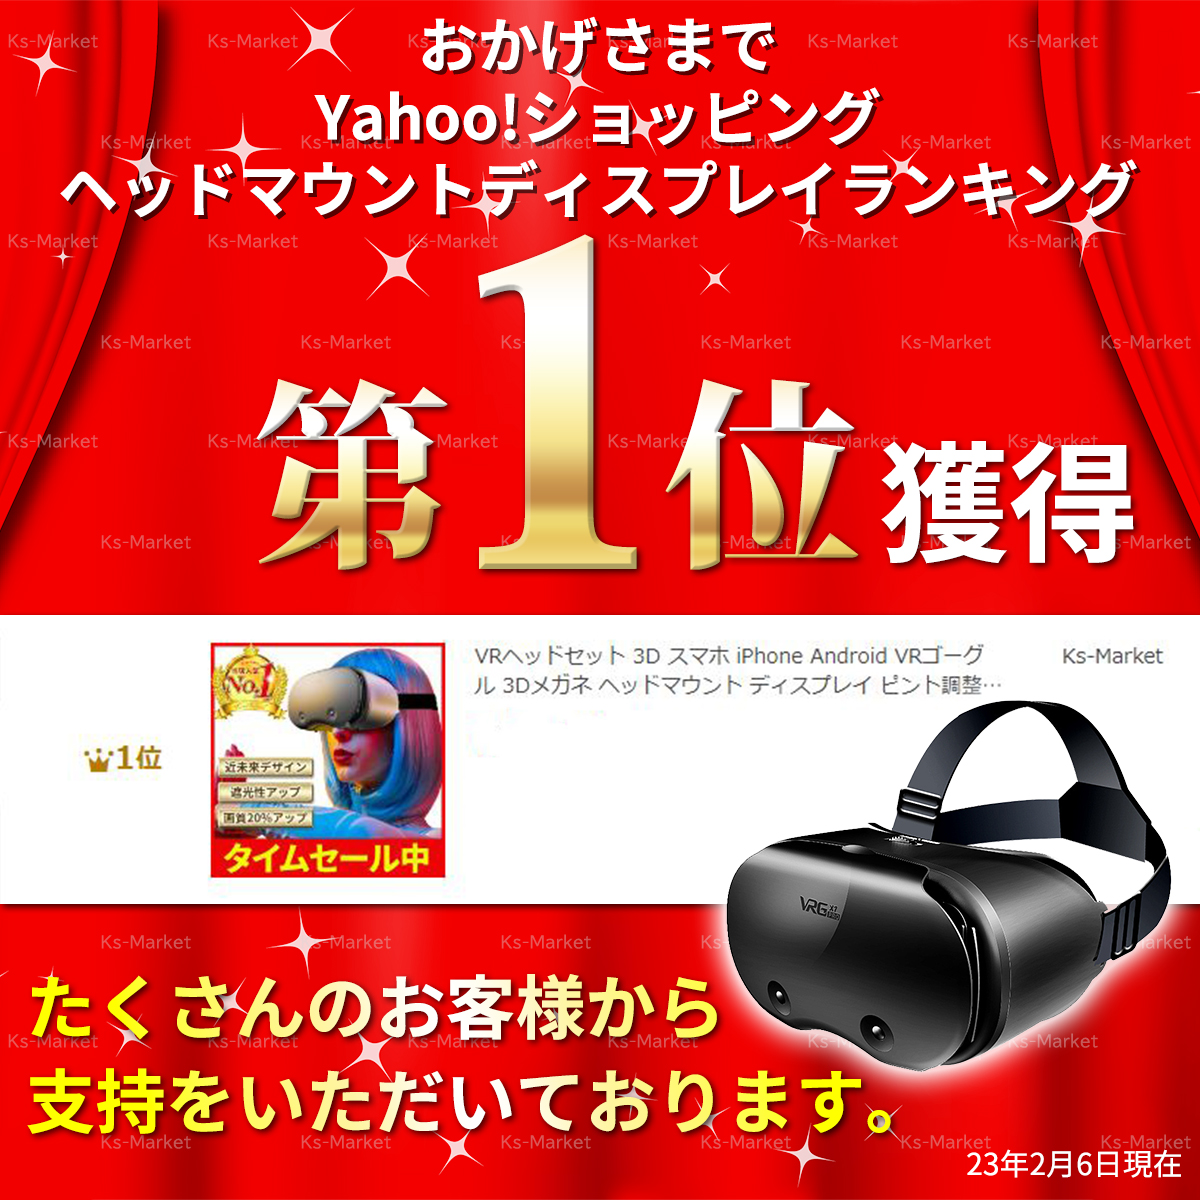 VRヘッドセット 3D スマホ iPhone Android VRゴーグル 3Dメガネ ヘッド 